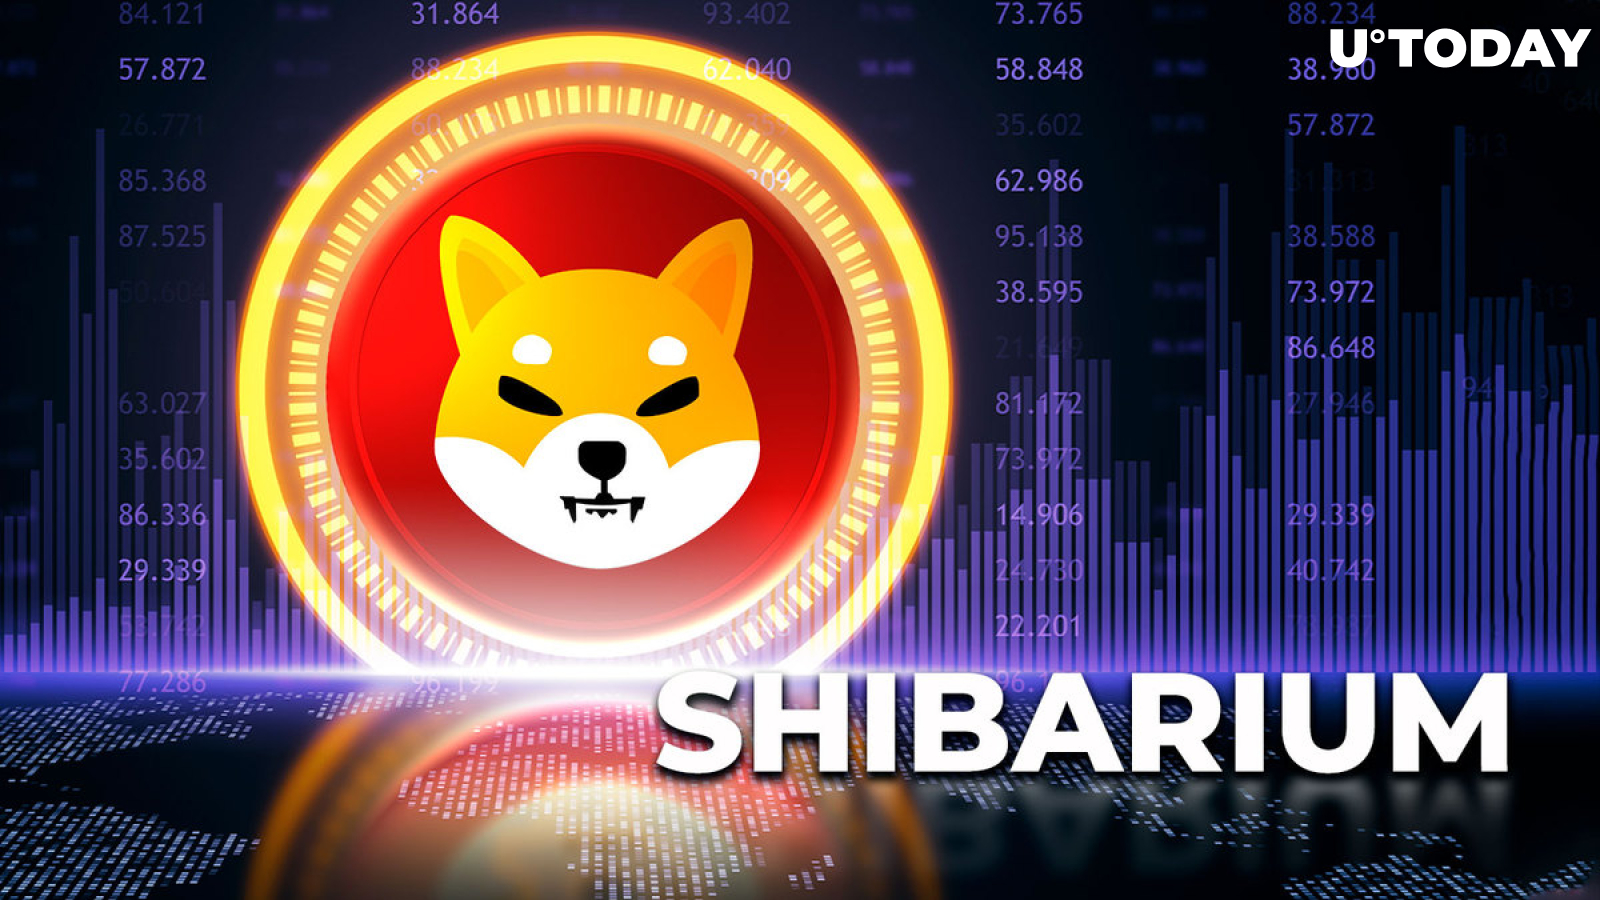 Shibarium Breaks New Record But in Unimpressive Way